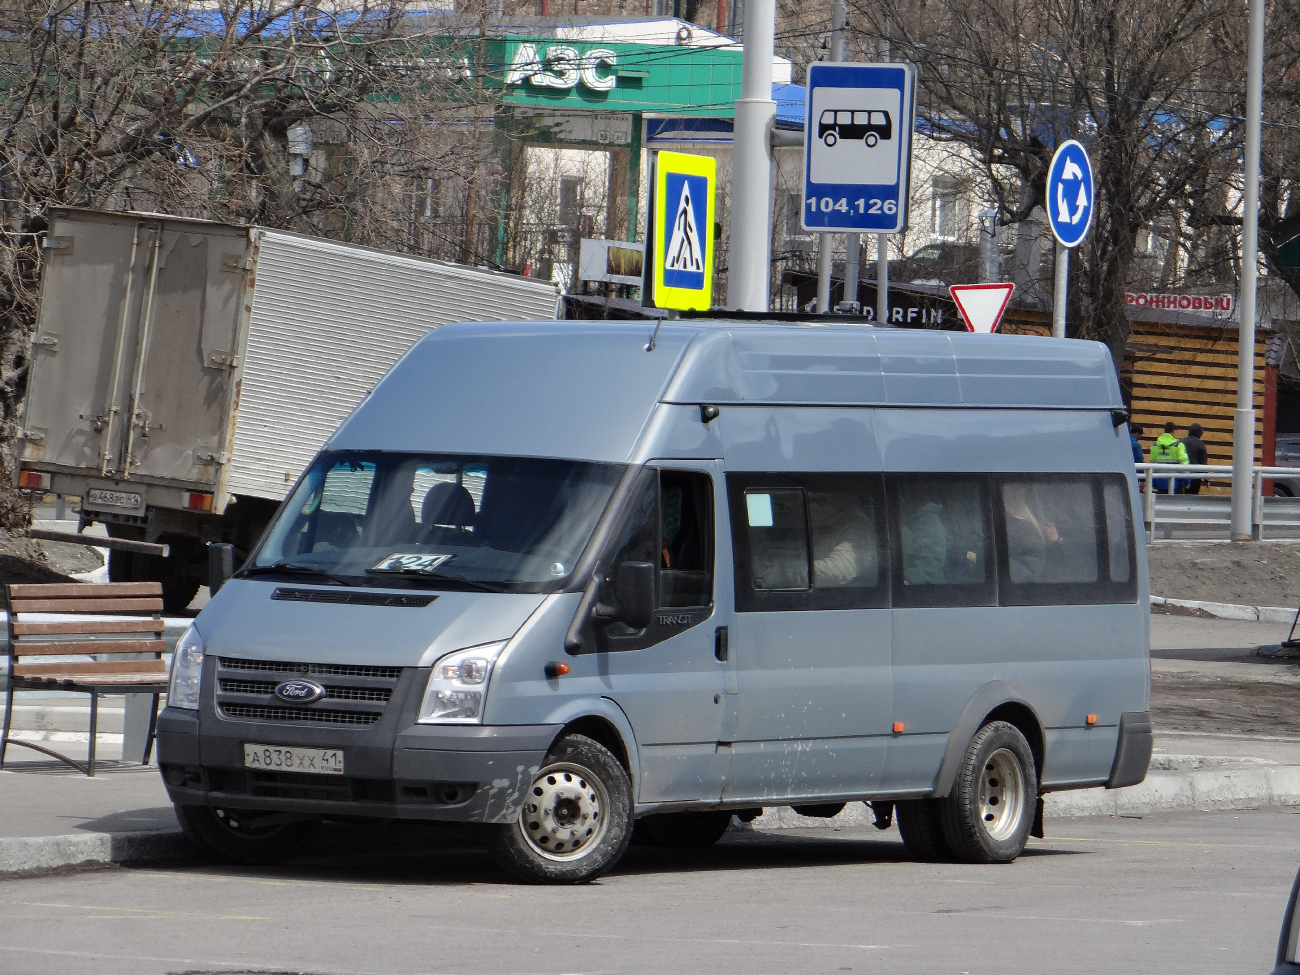 Petropavlovsk-Kamchatskiy, Nizhegorodets-222709 (Ford Transit) # А 838 ХХ 41